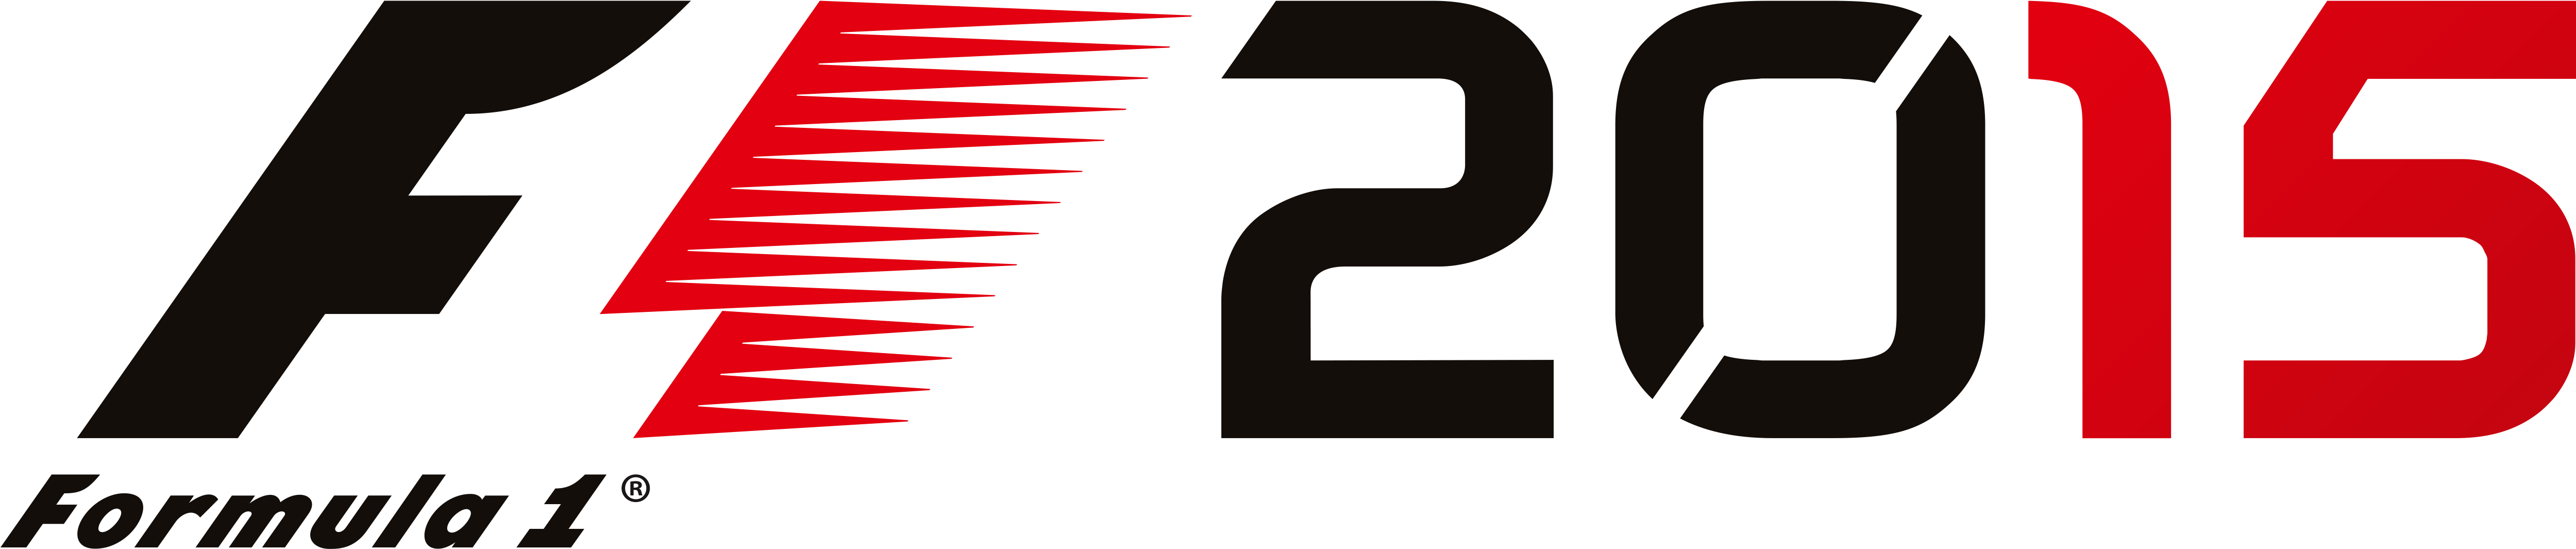 F1 2015 Logo Pos 1426170389 - Formula 1 2015 Ps3 (5064x1142), Png Download